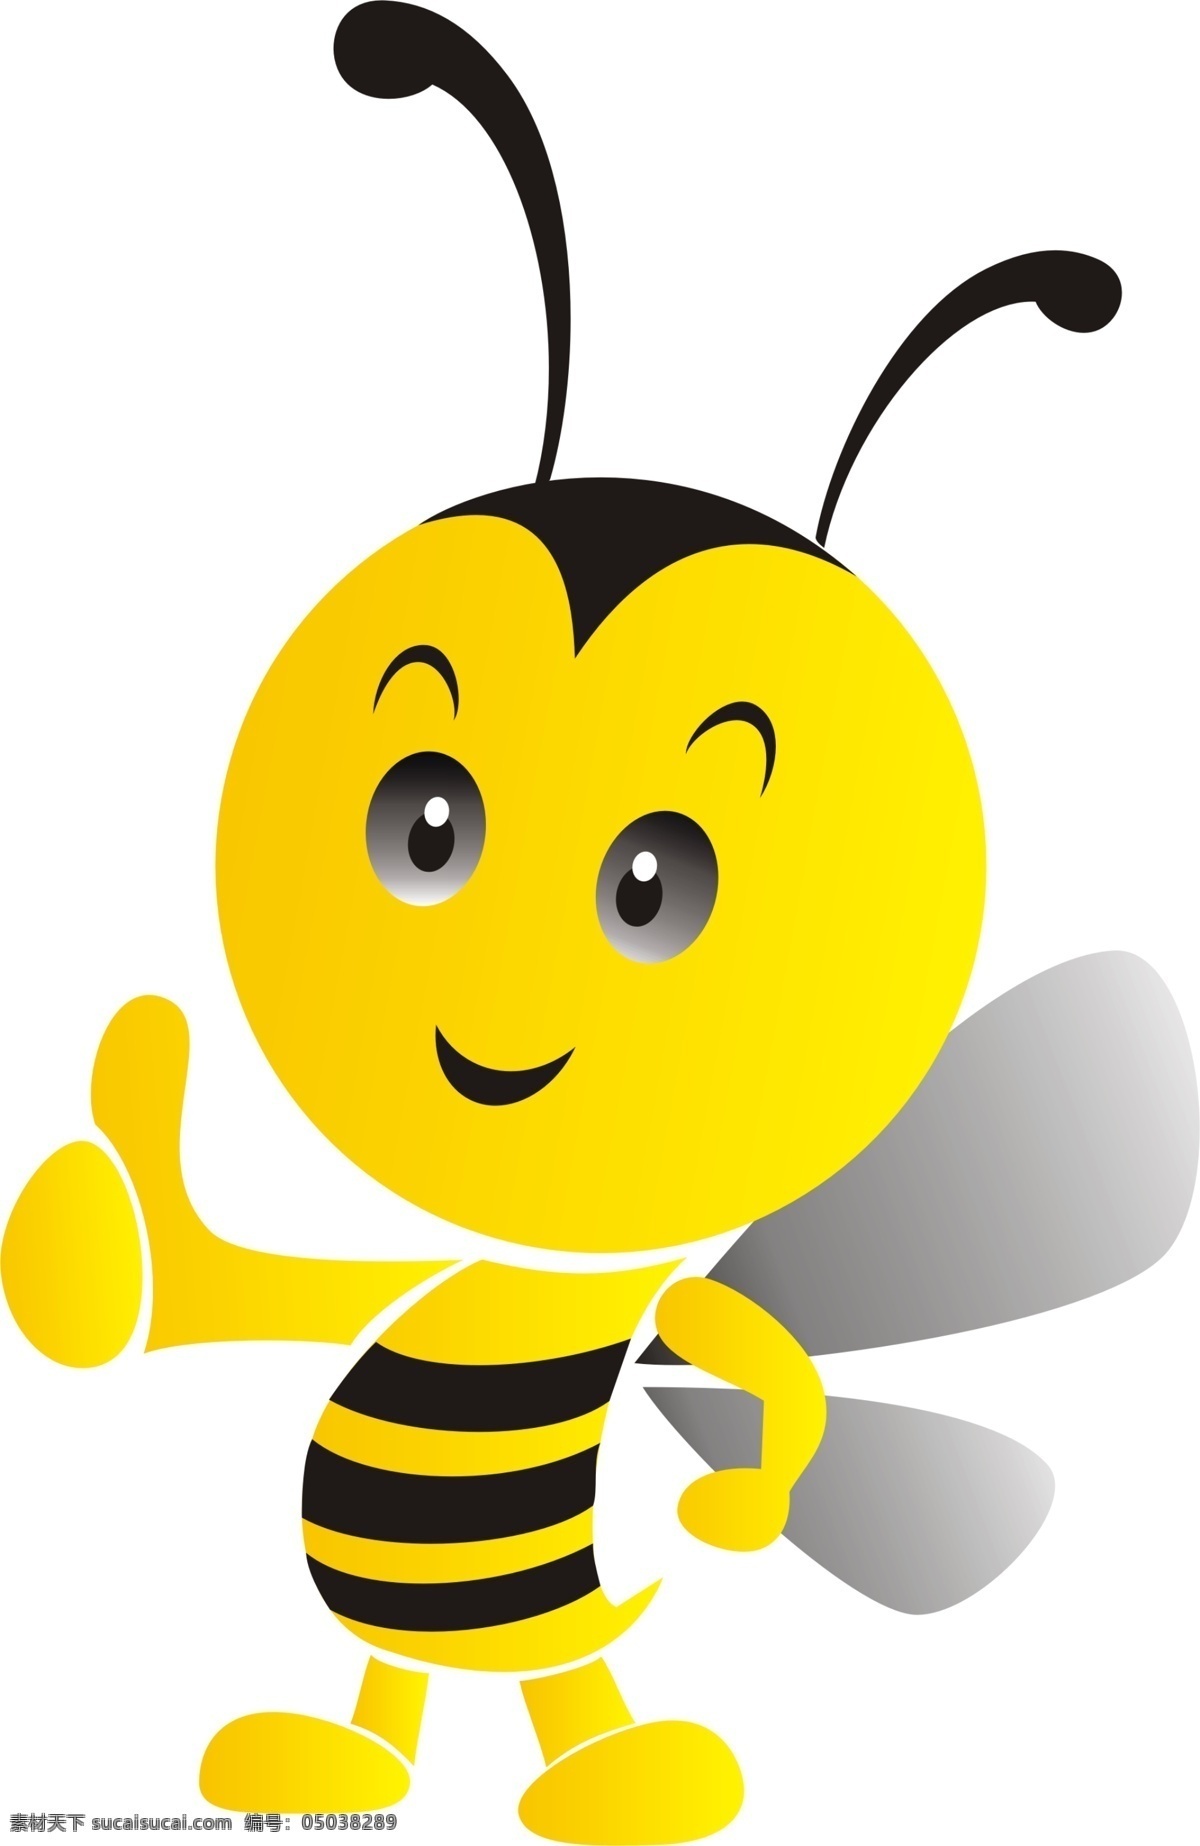 蜜蜂 卡通 标志 吉祥物 psd源文件